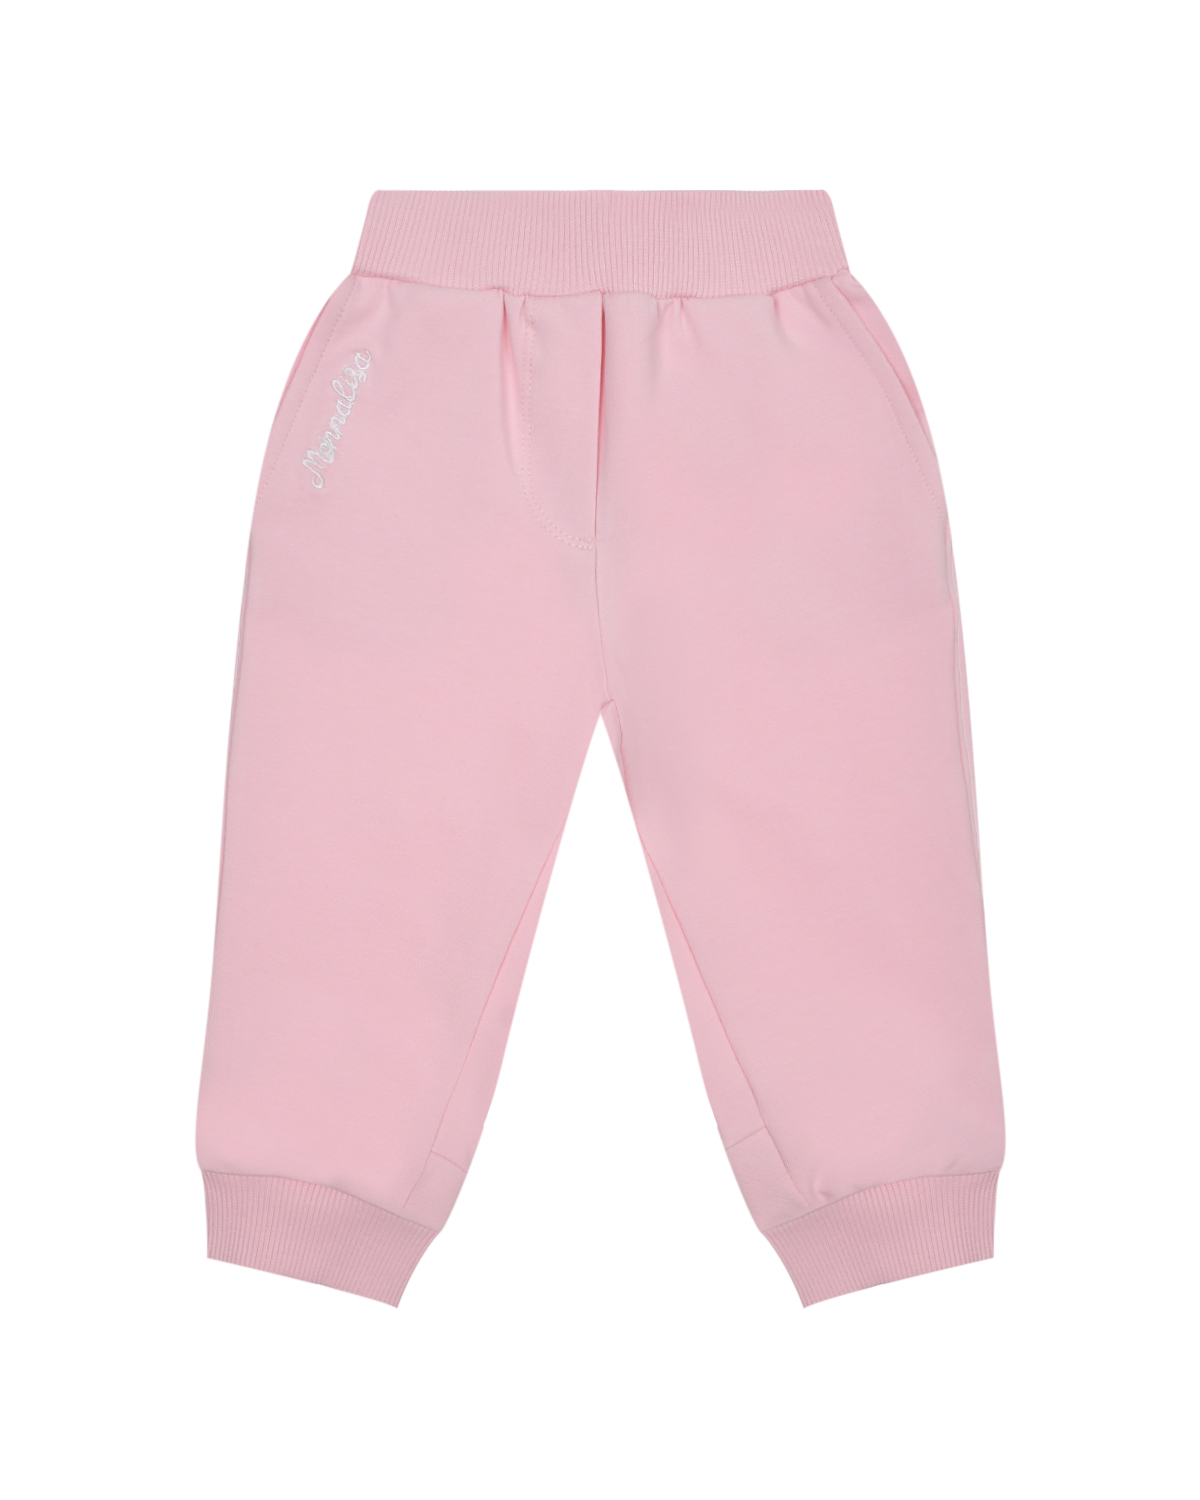 Спортивные брюки с поясом на резинке, розовые Monnalisa